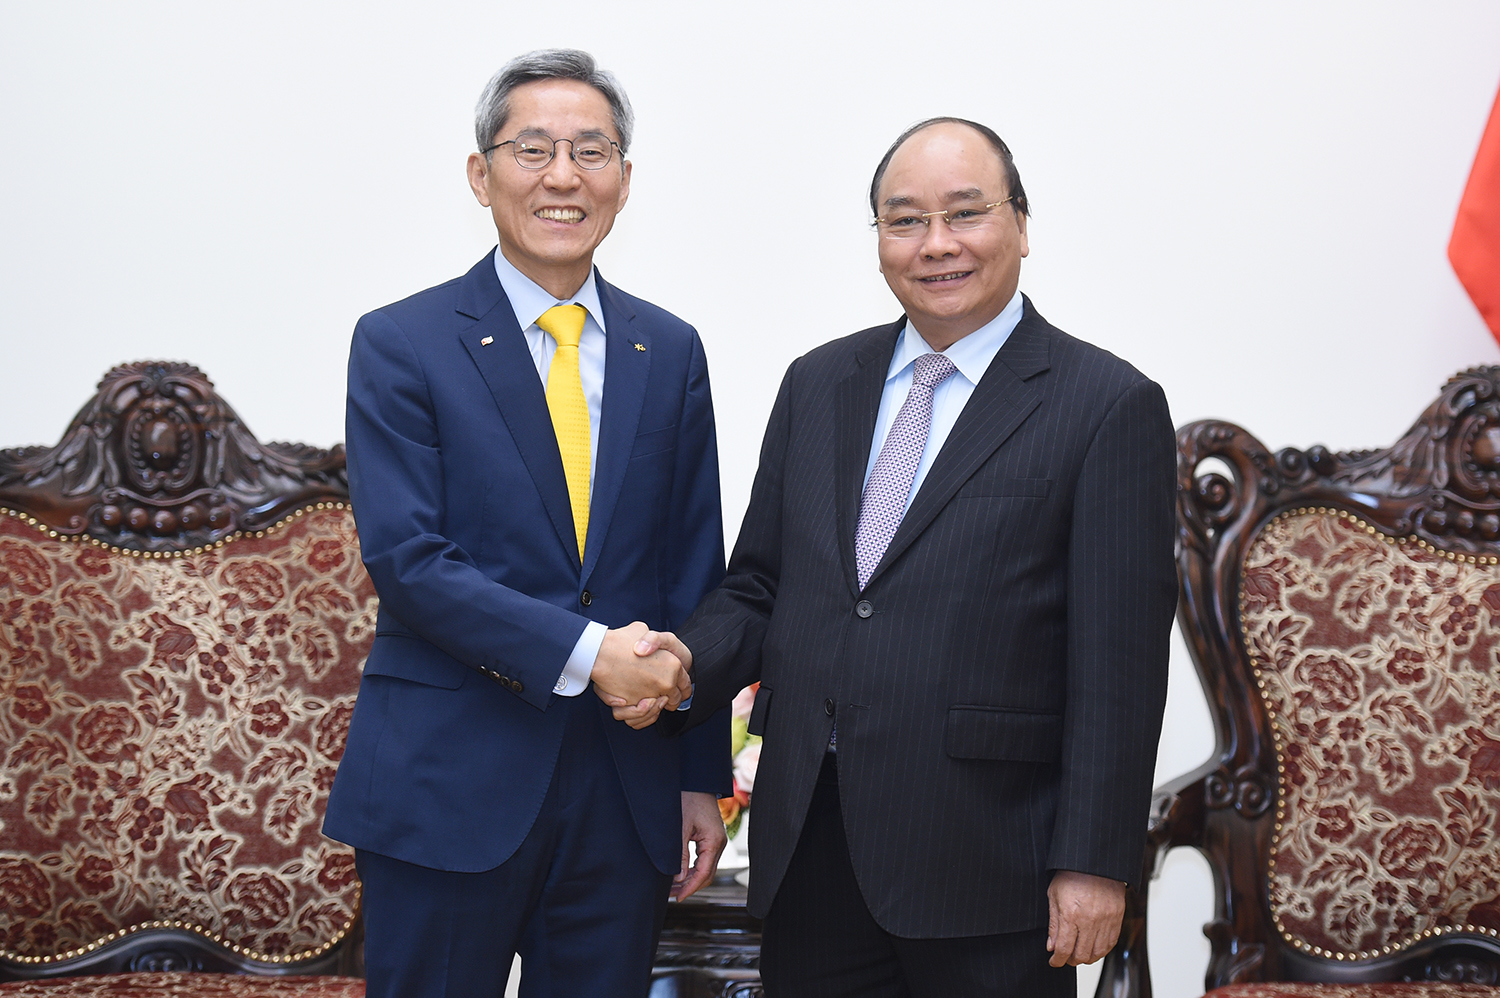  Thủ tướng Nguyễn Xuân Phúc và Chủ tịch Tập đoàn tài chính KB Kookmin, ông Yoon Jong-kyoo.  Ảnh: VGP